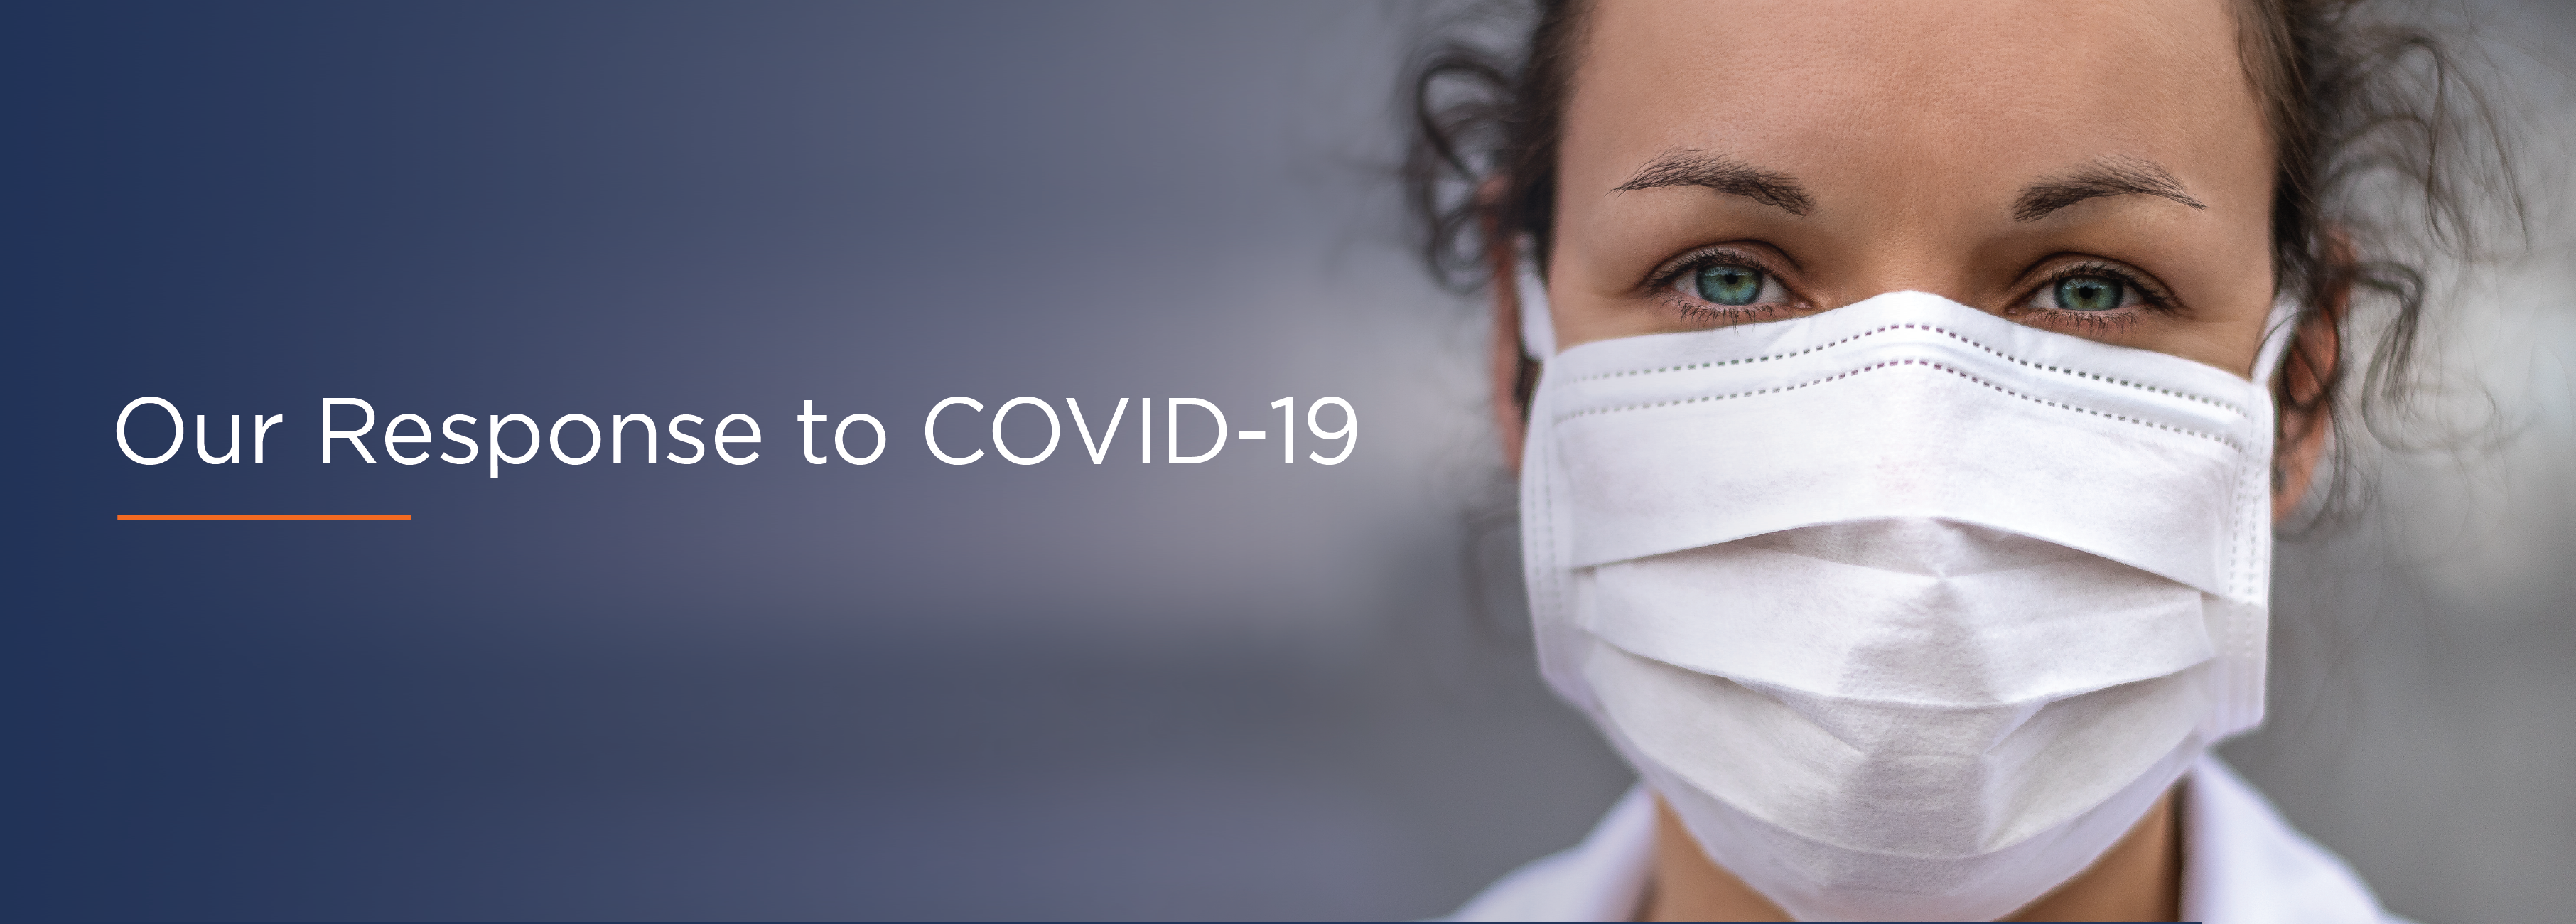 COVID-19 Header w/ Title